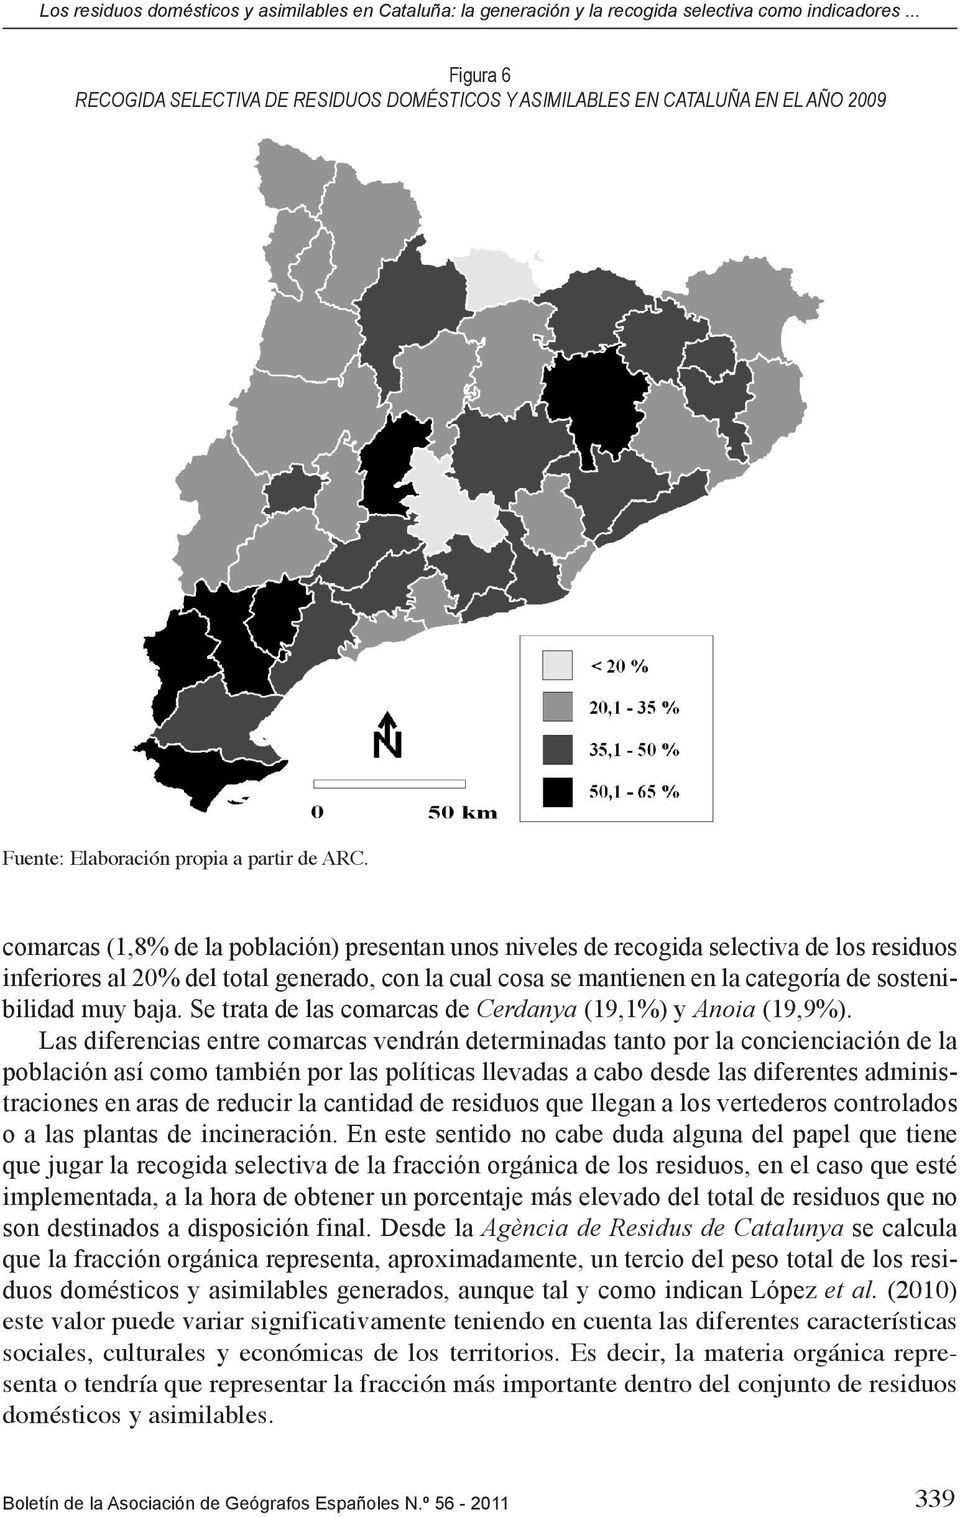 comarcas (1,8% de la población) presentan unos niveles de recogida selectiva de los residuos inferiores al 20% del total generado, con la cual cosa se mantienen en la categoría de sostenibilidad muy